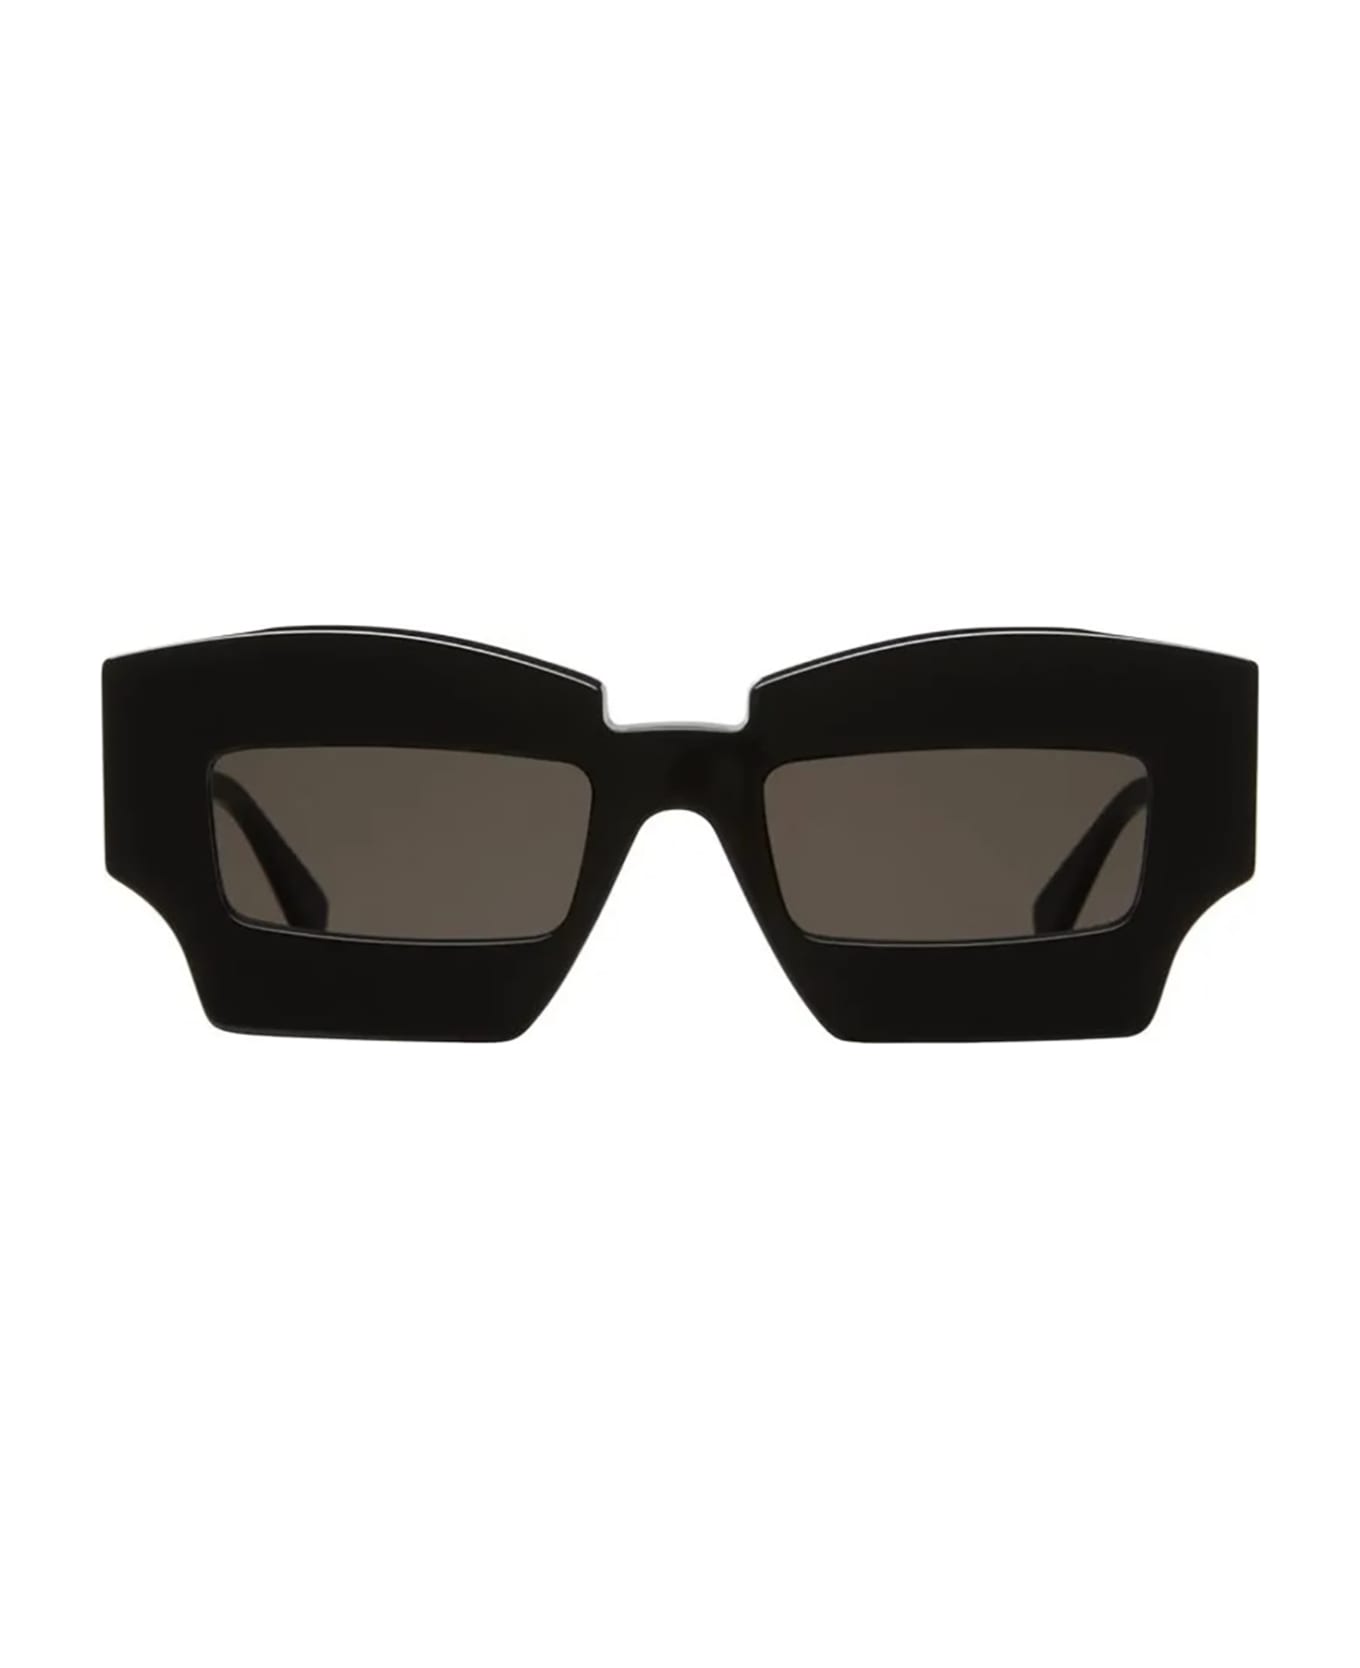 Kuboraum X6 Sunglasses - Bs サングラス